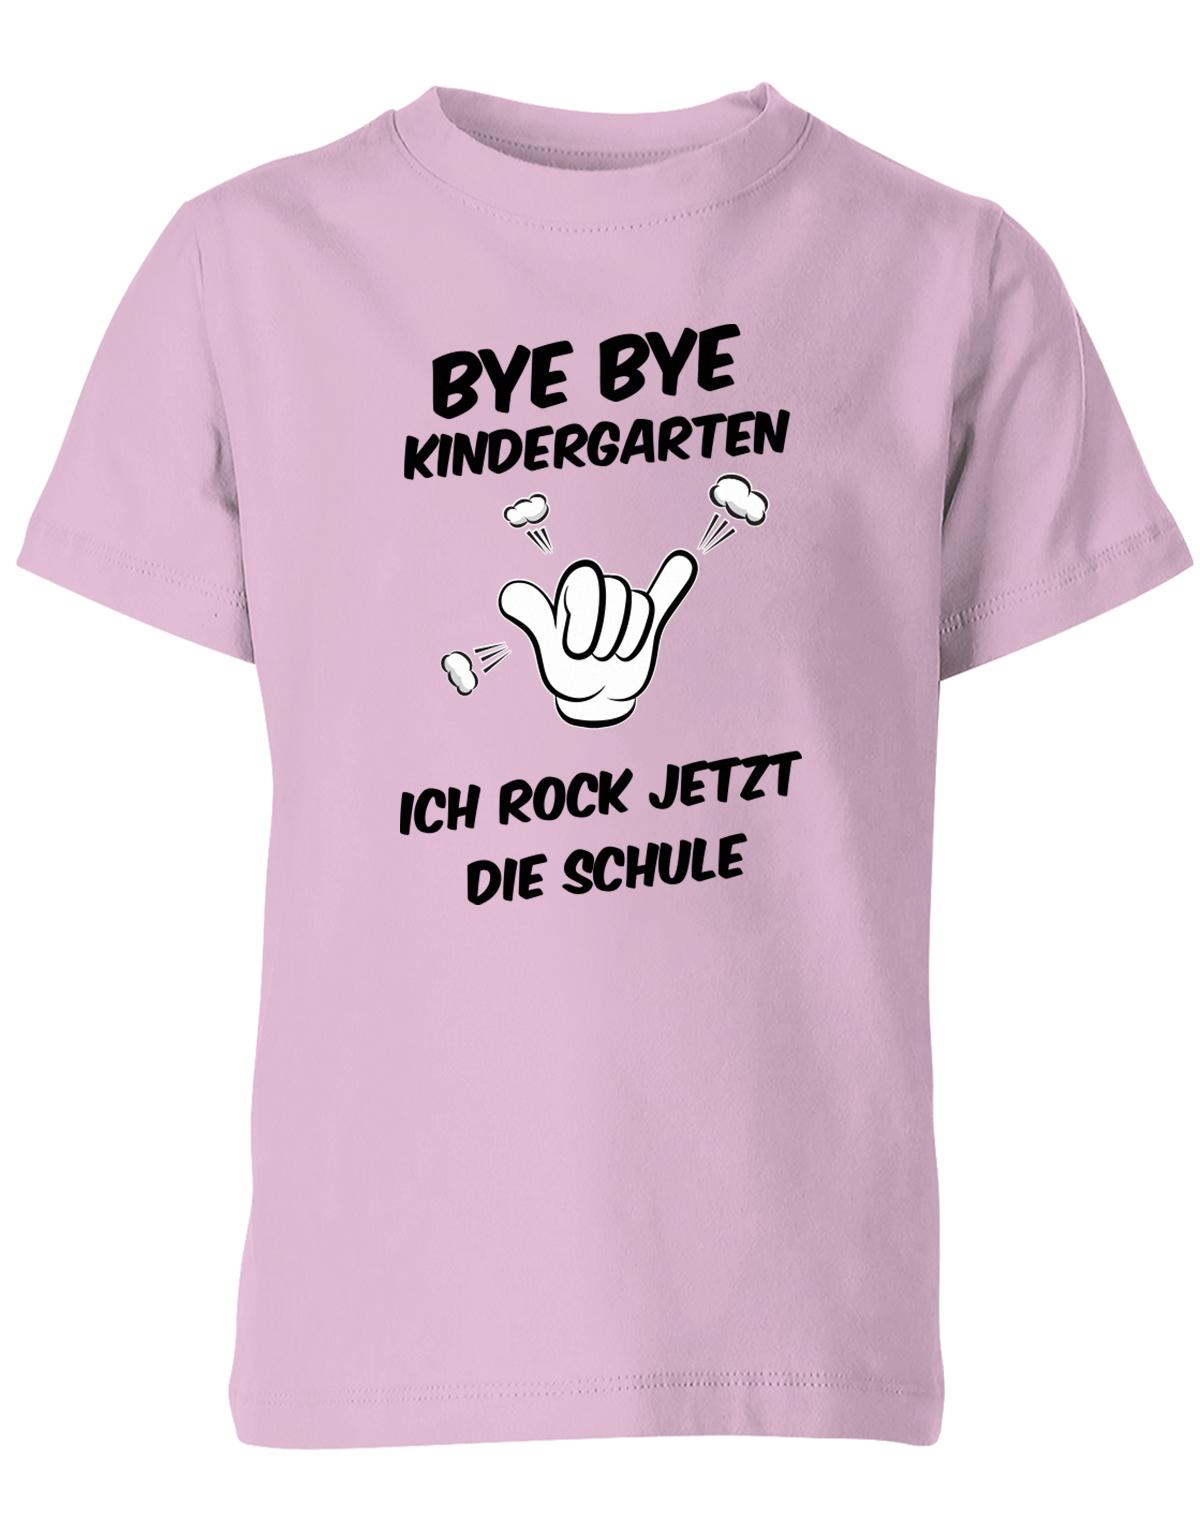 Bye bye Kindergarten ich rock jetzt die Schule - Einschulung - Kinder T-Shirt Rosaa